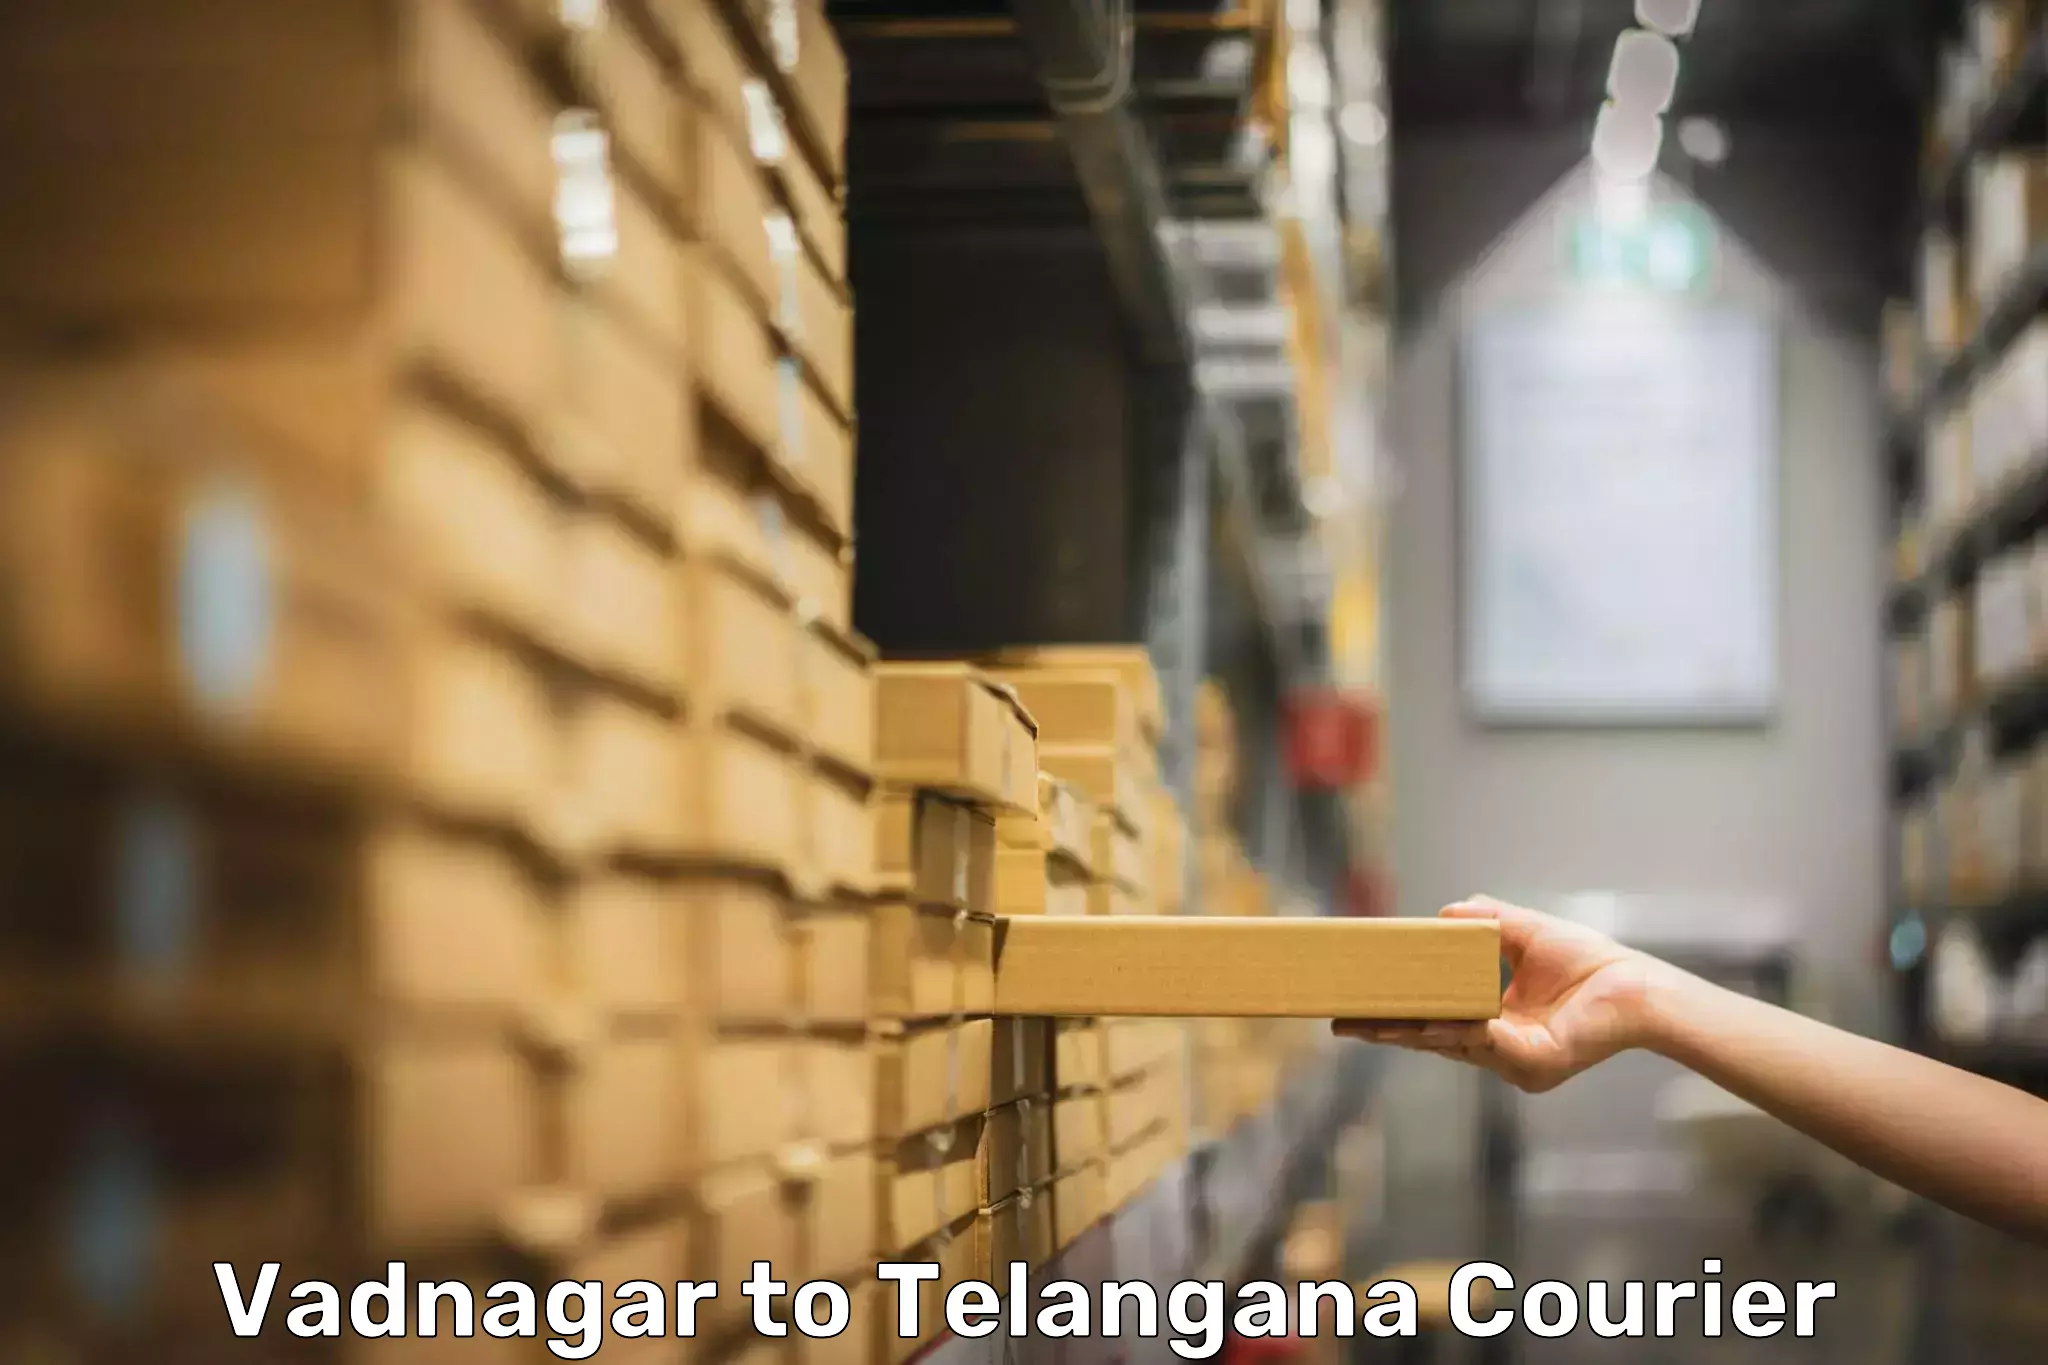 Baggage courier insights Vadnagar to Telangana